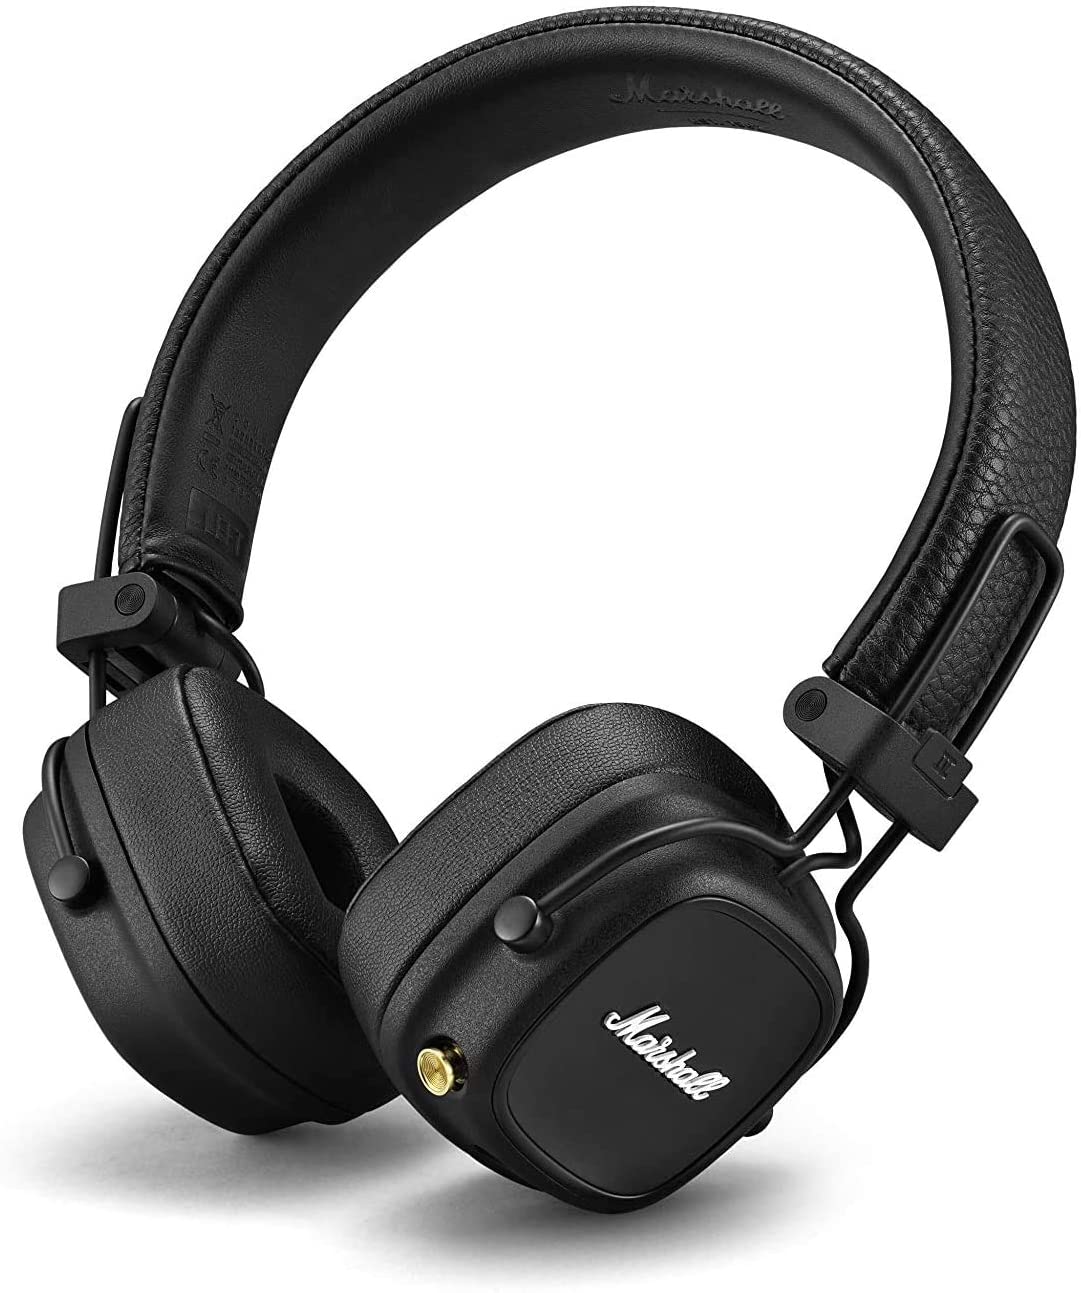 Marshall Major IV On-Ear Bluetooth Headphone, Black $100